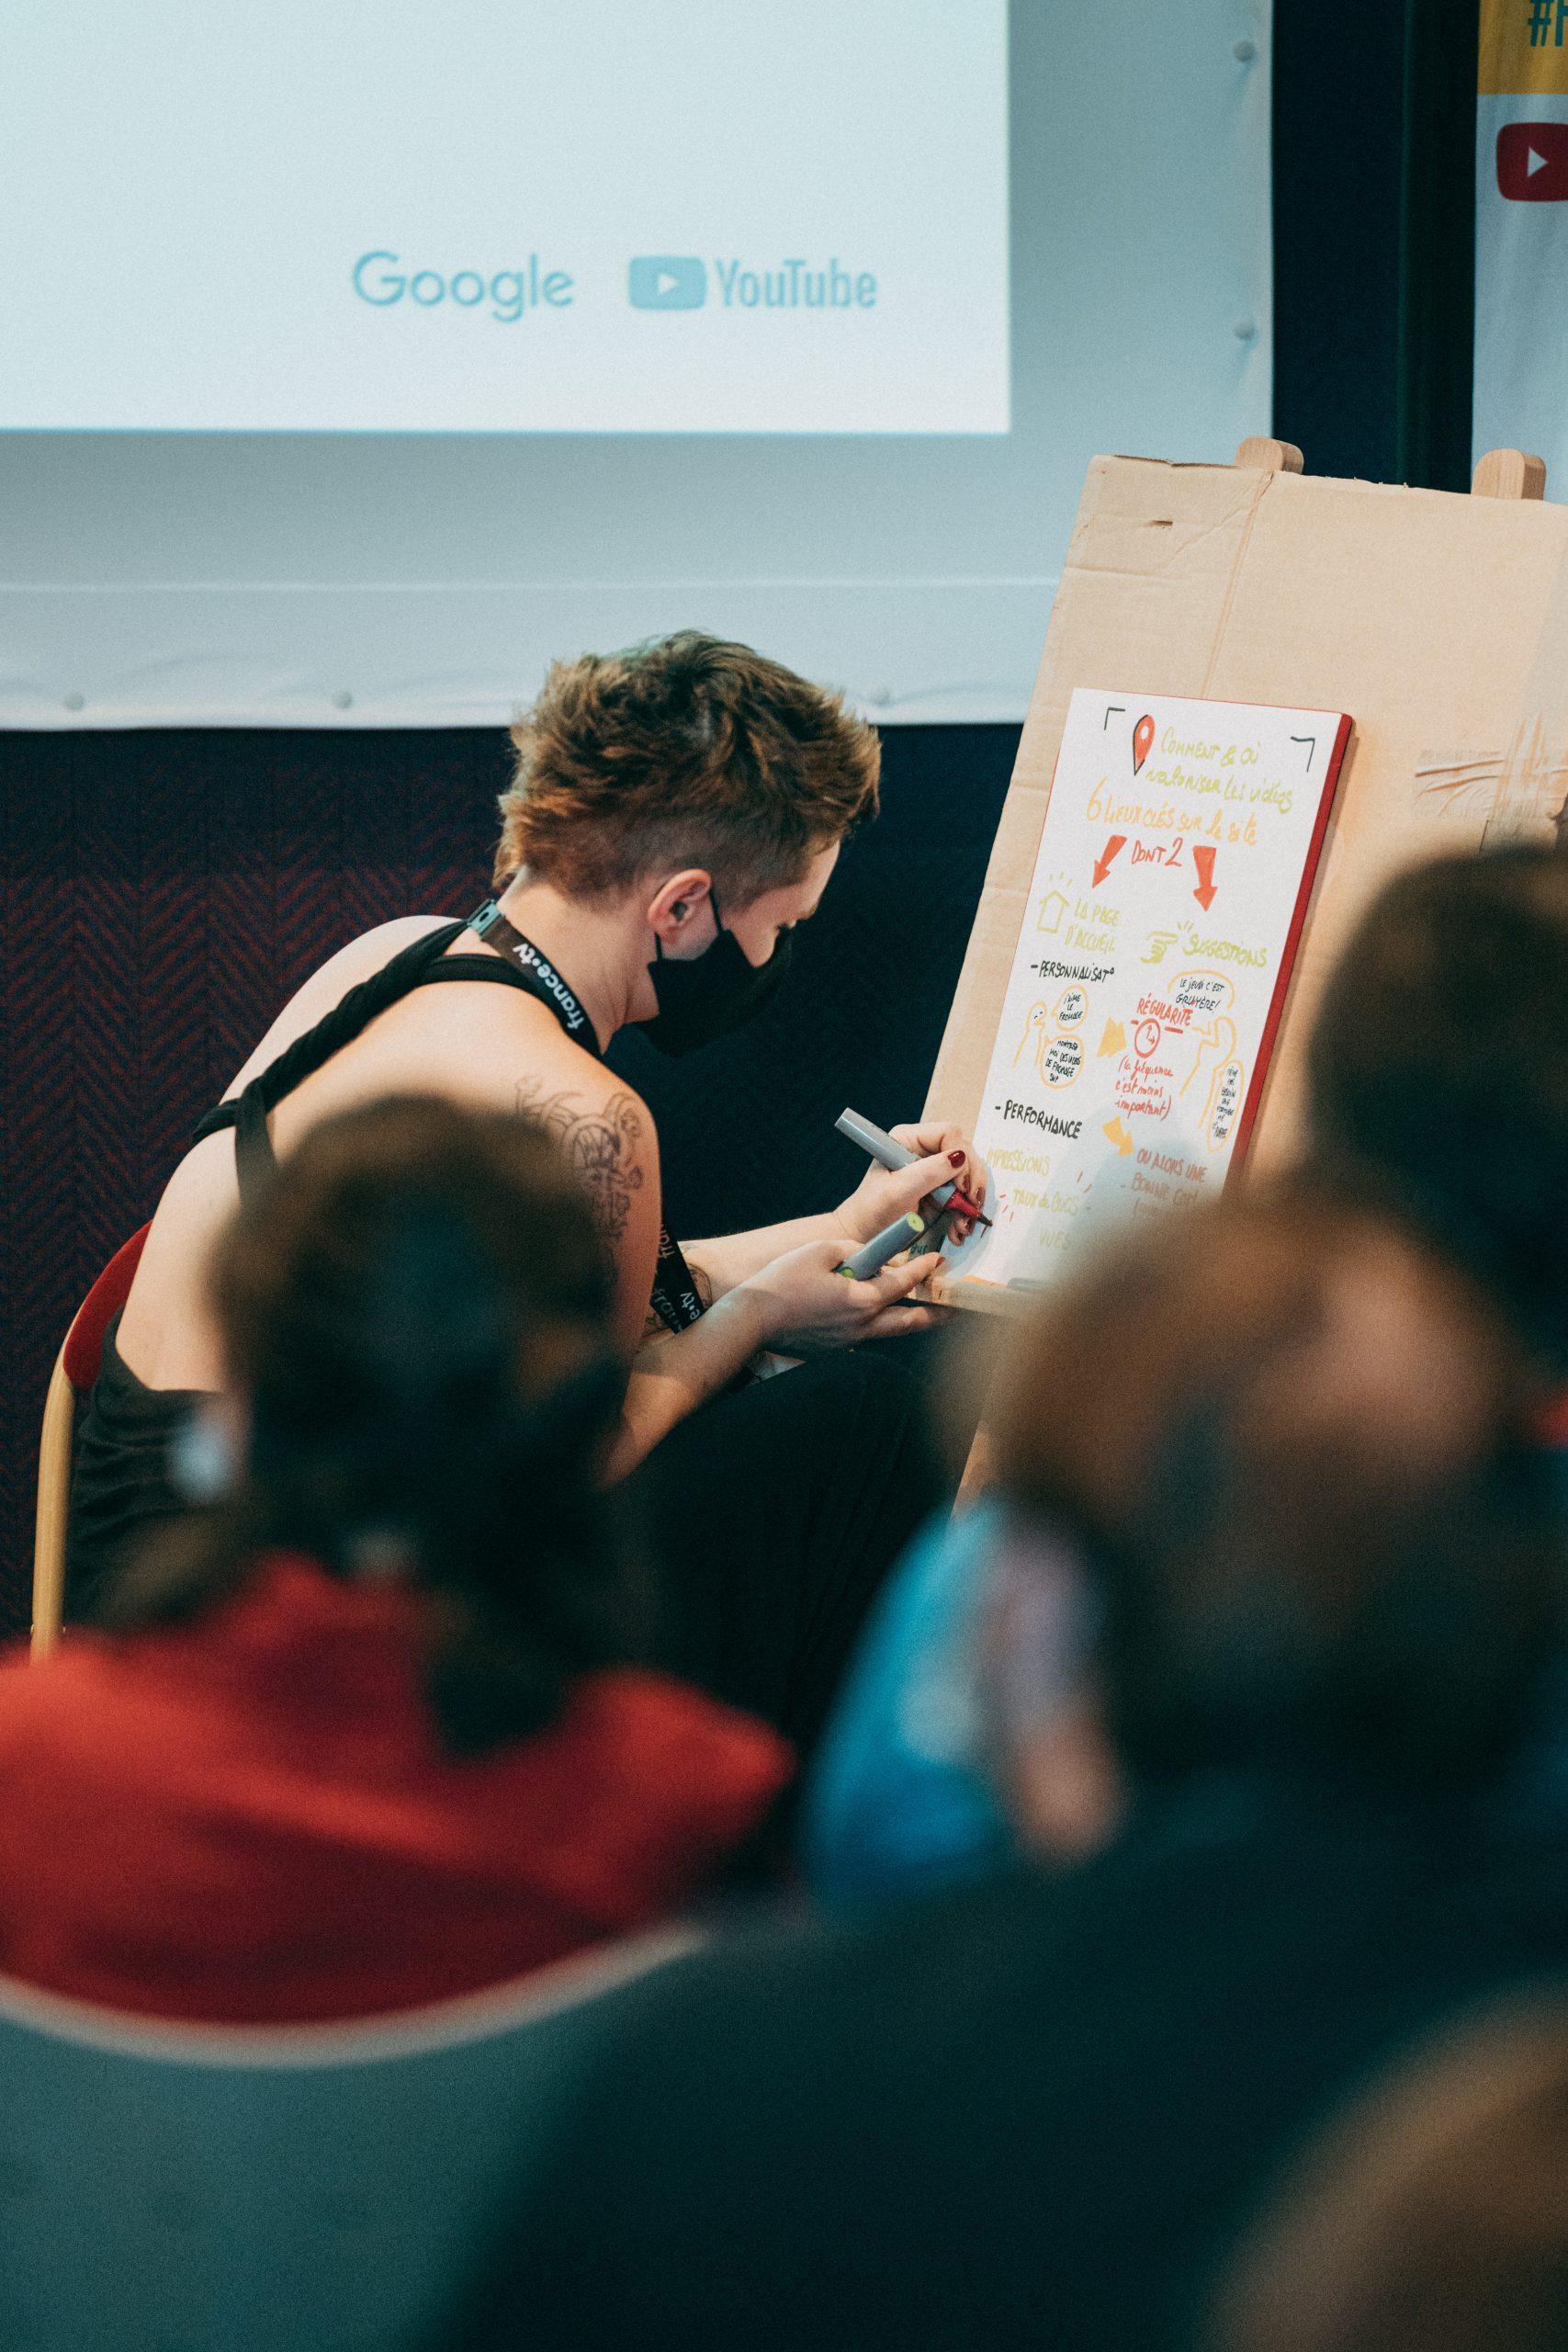 éditions précédentes Frames Pro : photo d'une femme aux cheveux courts en train d'écrire sur une feuille